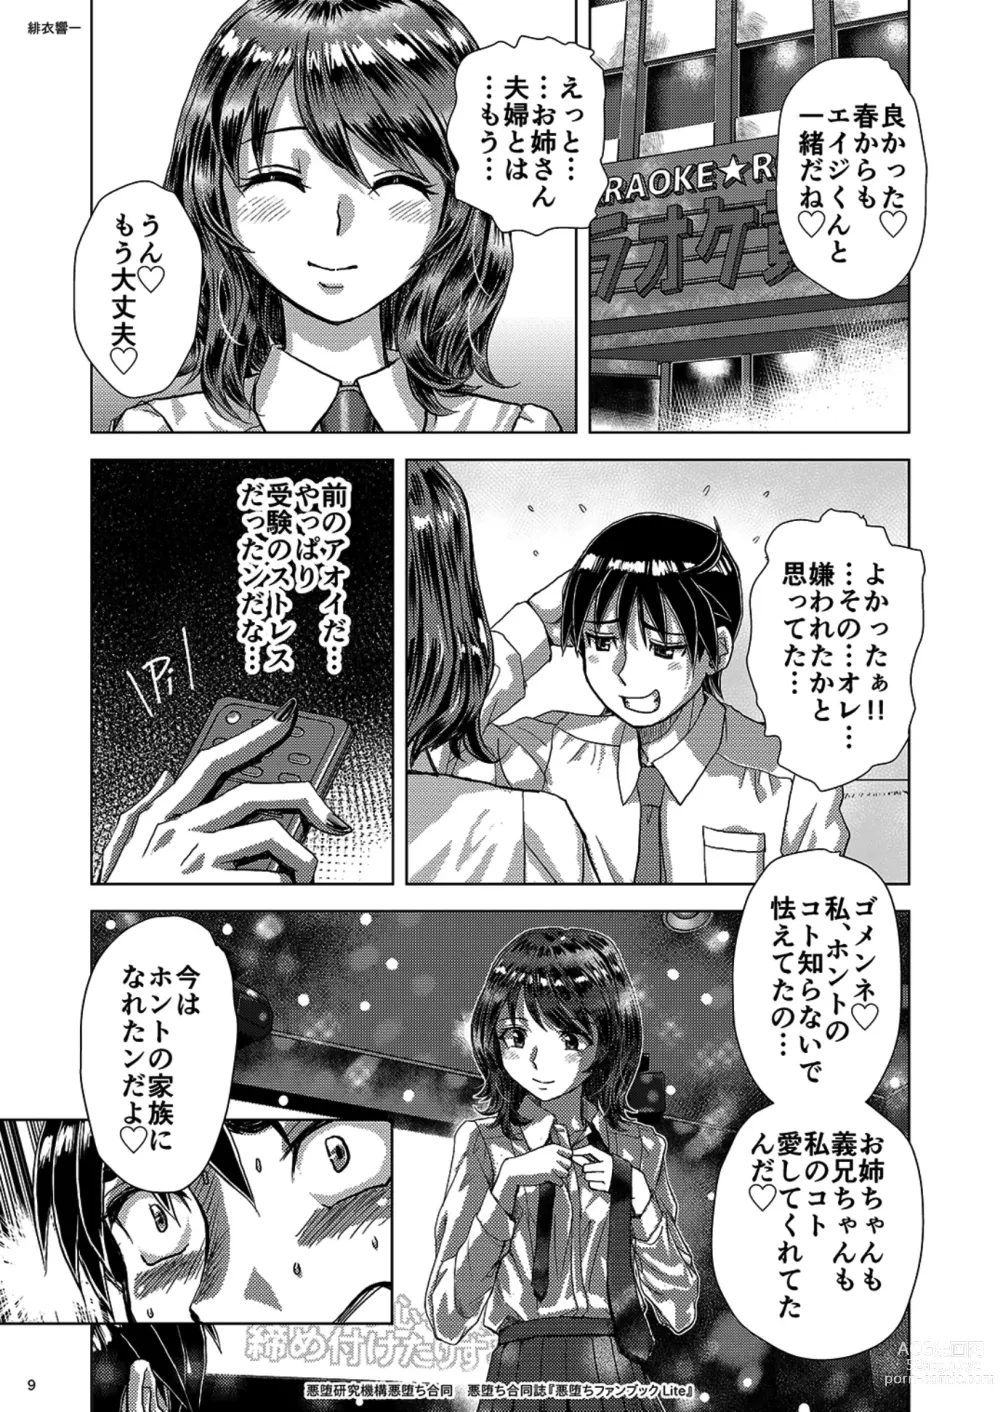 Page 9 of doujinshi Akuochi Goudoushi Akuochi Fanbook Lite